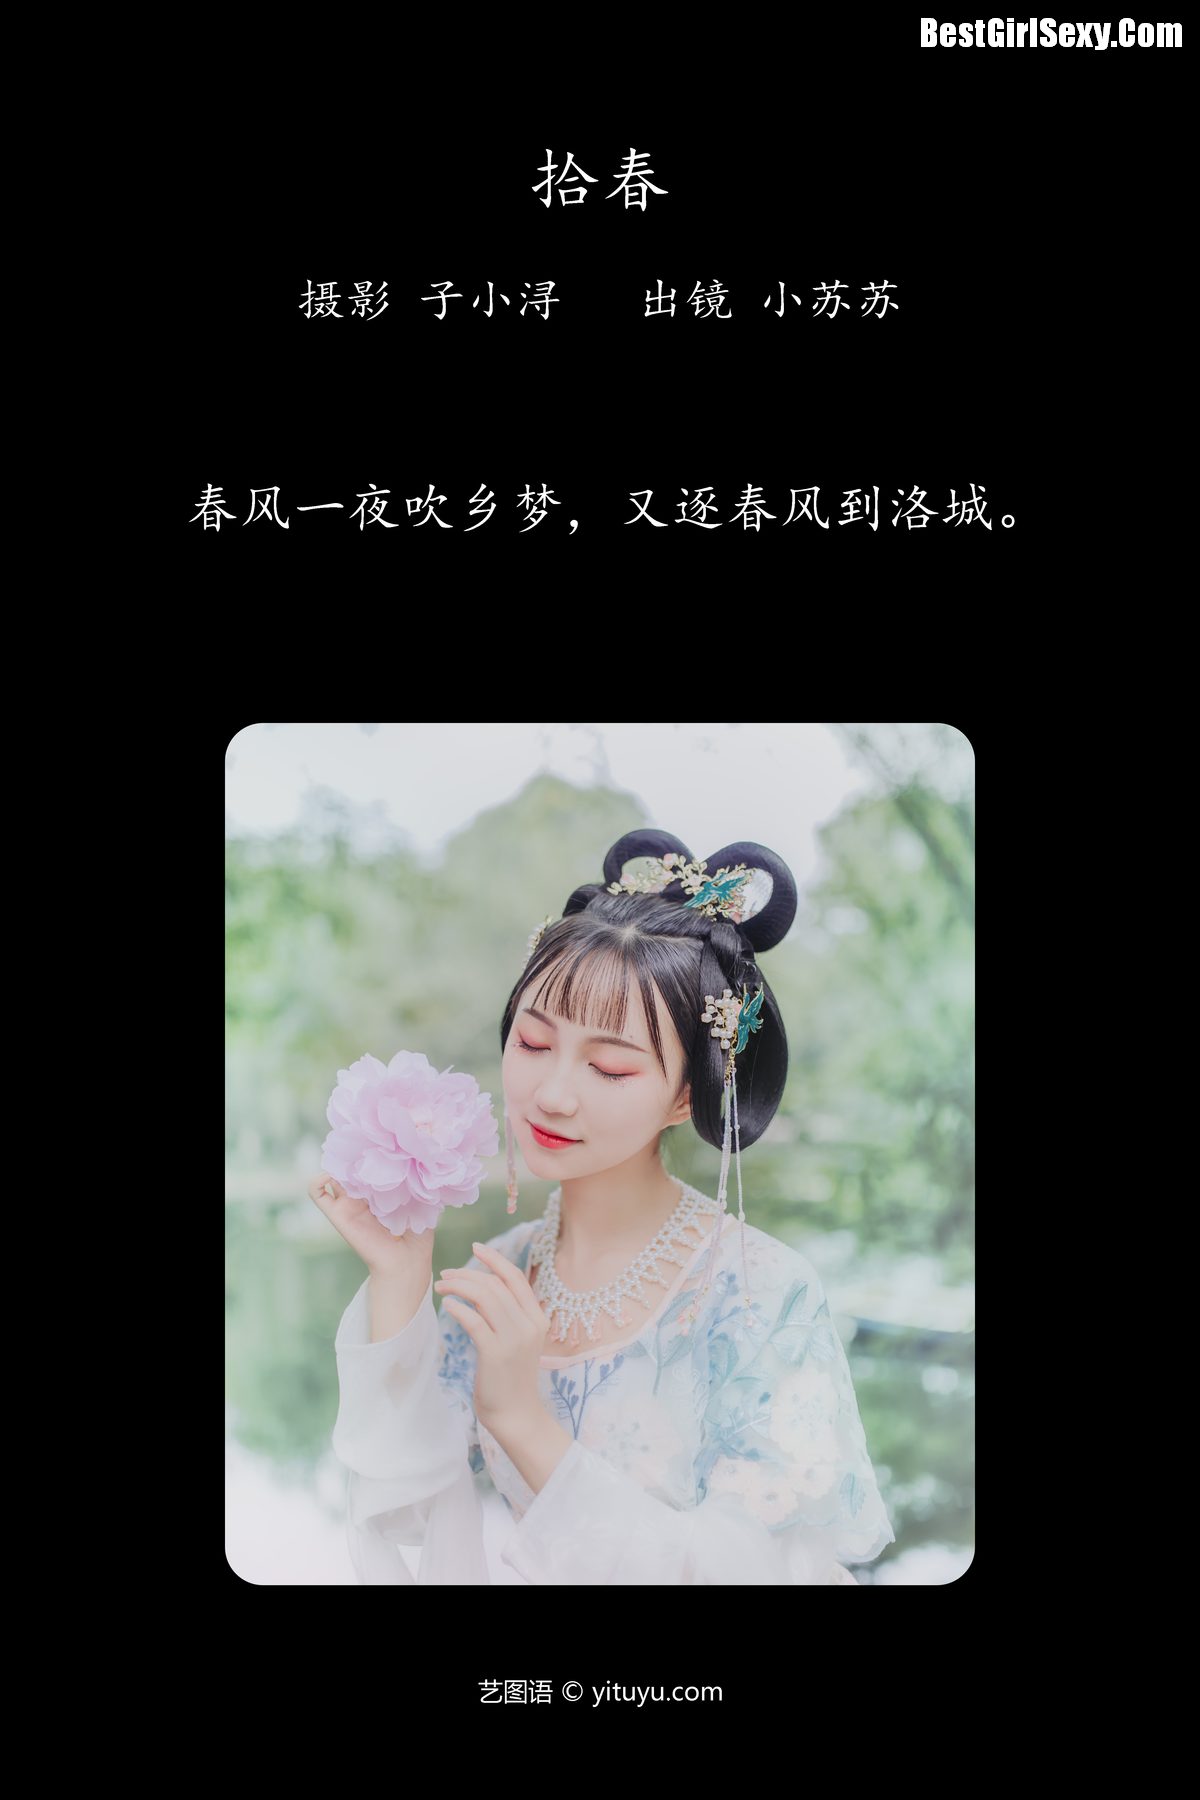 YiTuYu艺图语 Vol 4095 Qi Luo Sheng De Xiao Su Su 0002 6836564591.jpg